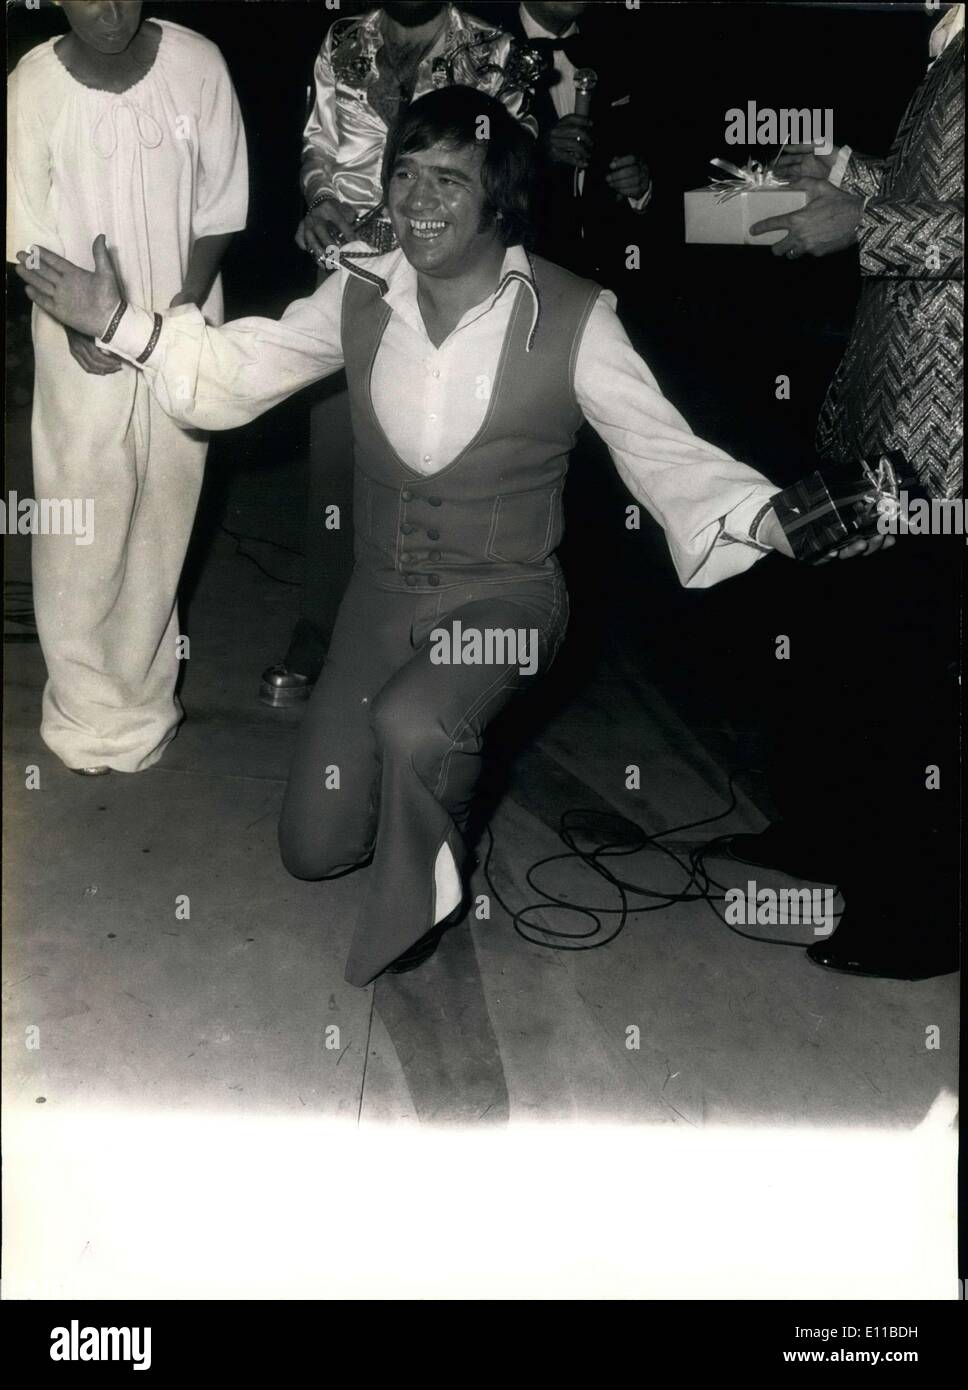 Lug. 13, 1976 - Il cantante irlandese Joe Dolan, che ha vinto il ''La Rose D'Or du Disque'' nel 1975, è stato chiamato il ''più simpatiche e cantante cooperativa'' da parte dei giornalisti. Dolan è raffigurato mostra la sua gioia nel ricevere il premio imprevisti. Foto Stock